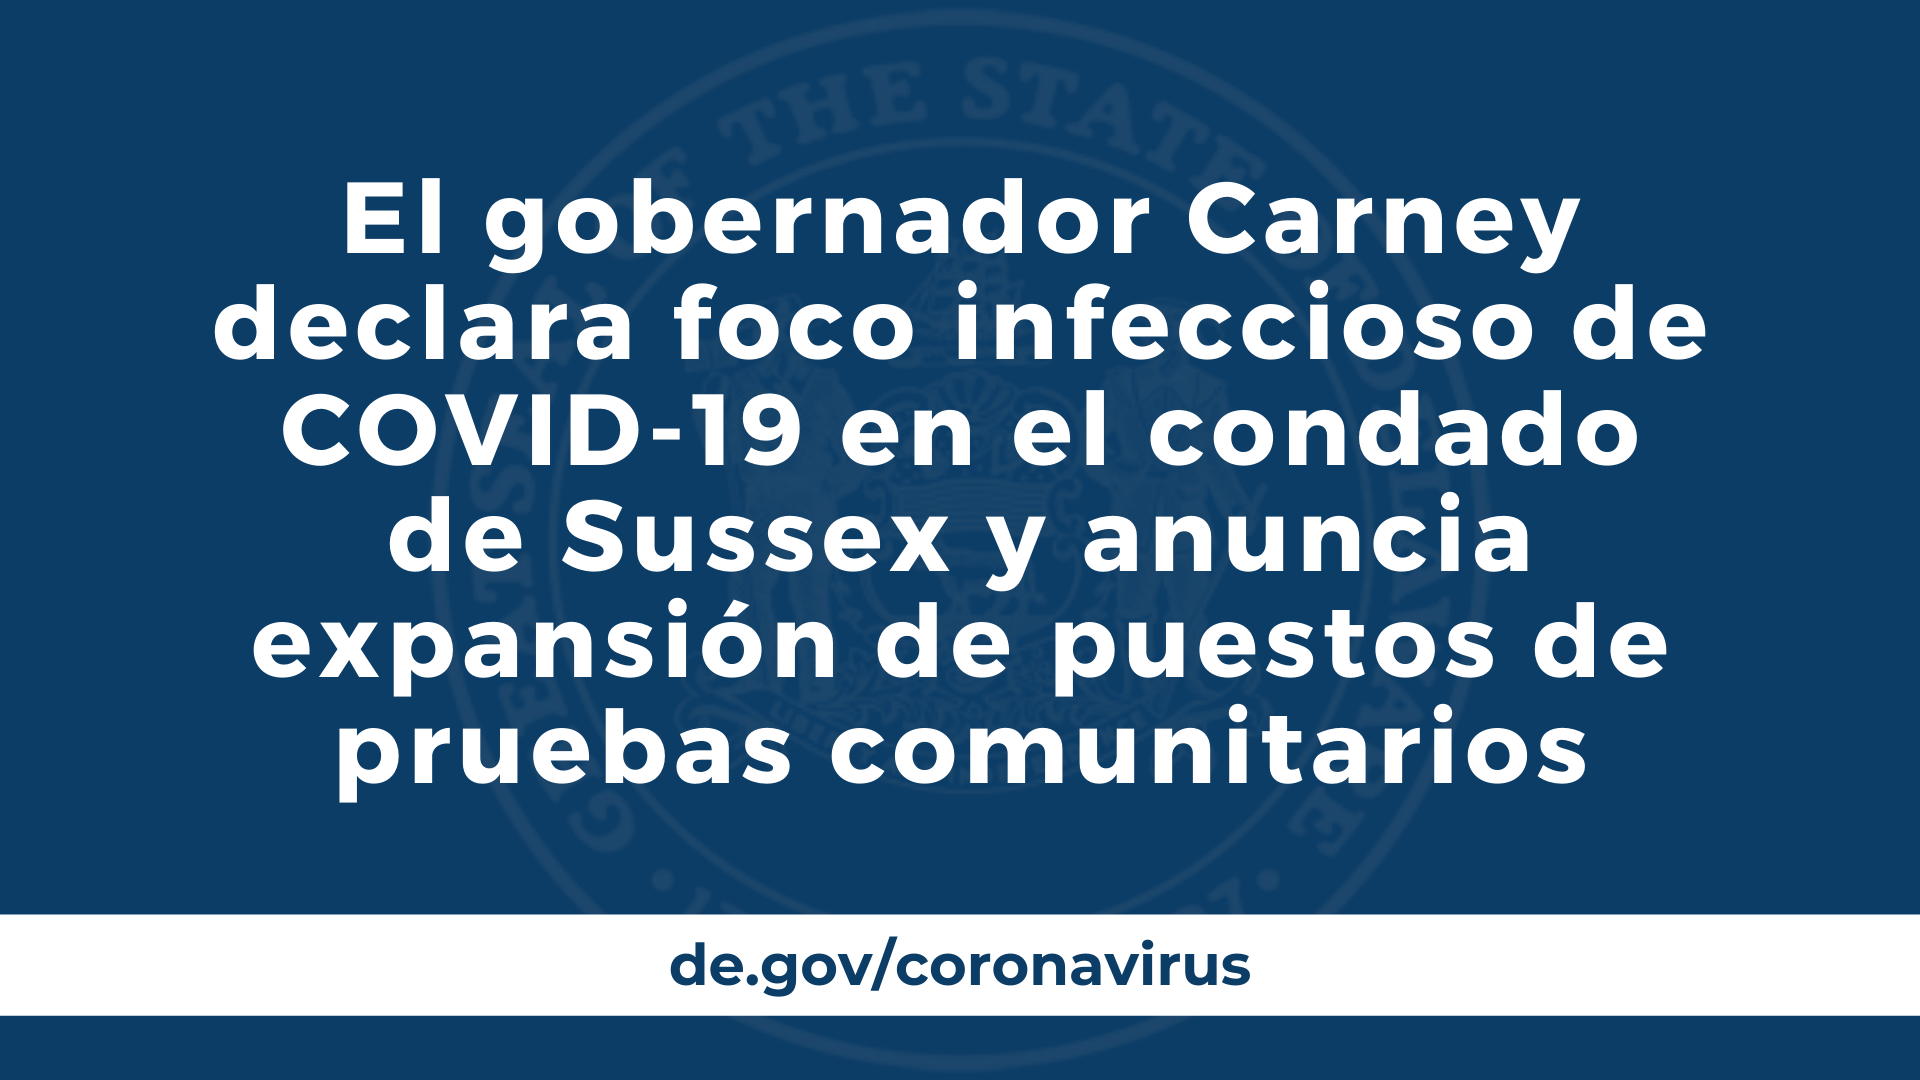 El gobernador Carney declara foco infeccioso de COVID-19 en el condado de Sussex y anuncia expansión de puestos de pruebas comunitarios